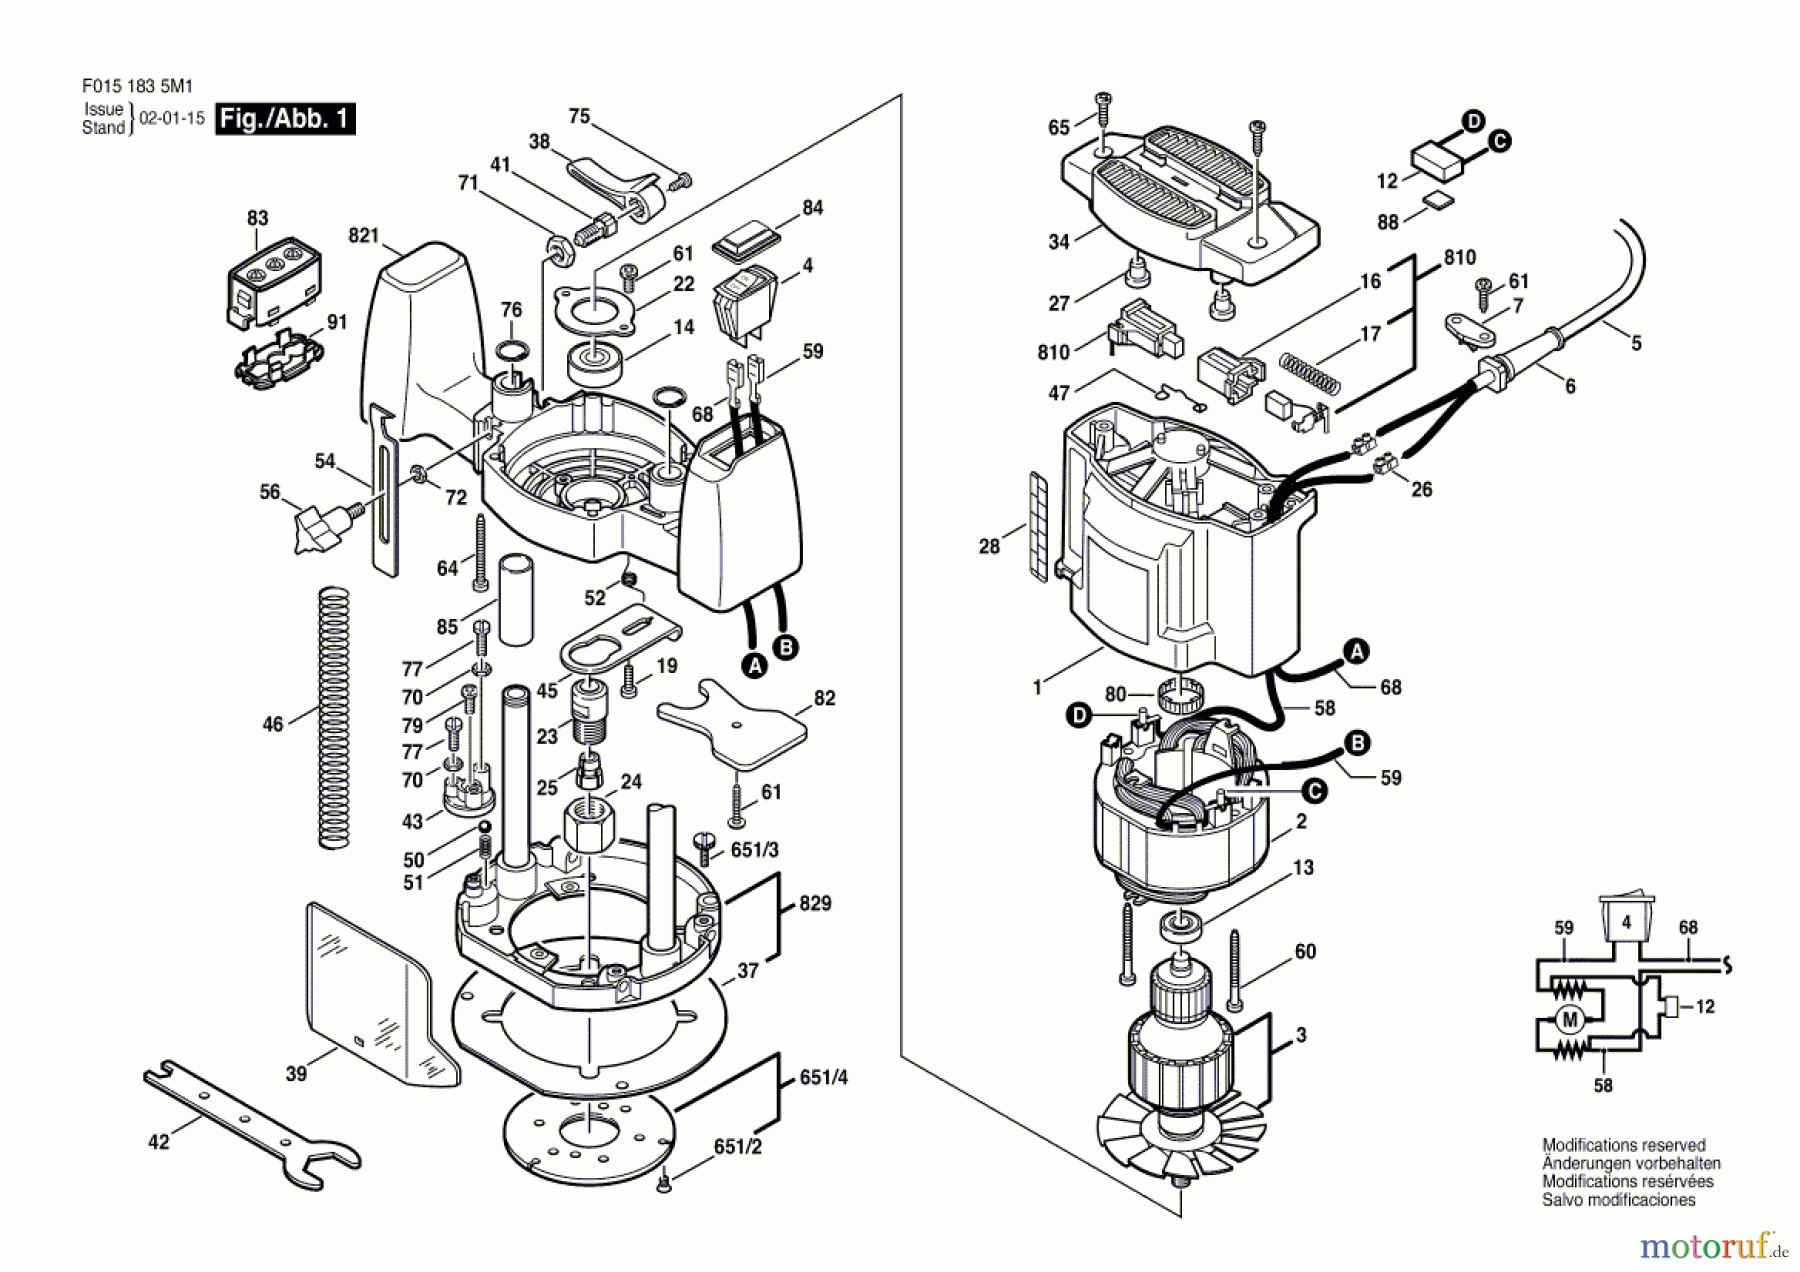  Bosch Werkzeug Drehwerkzeug 1835U1 Seite 1